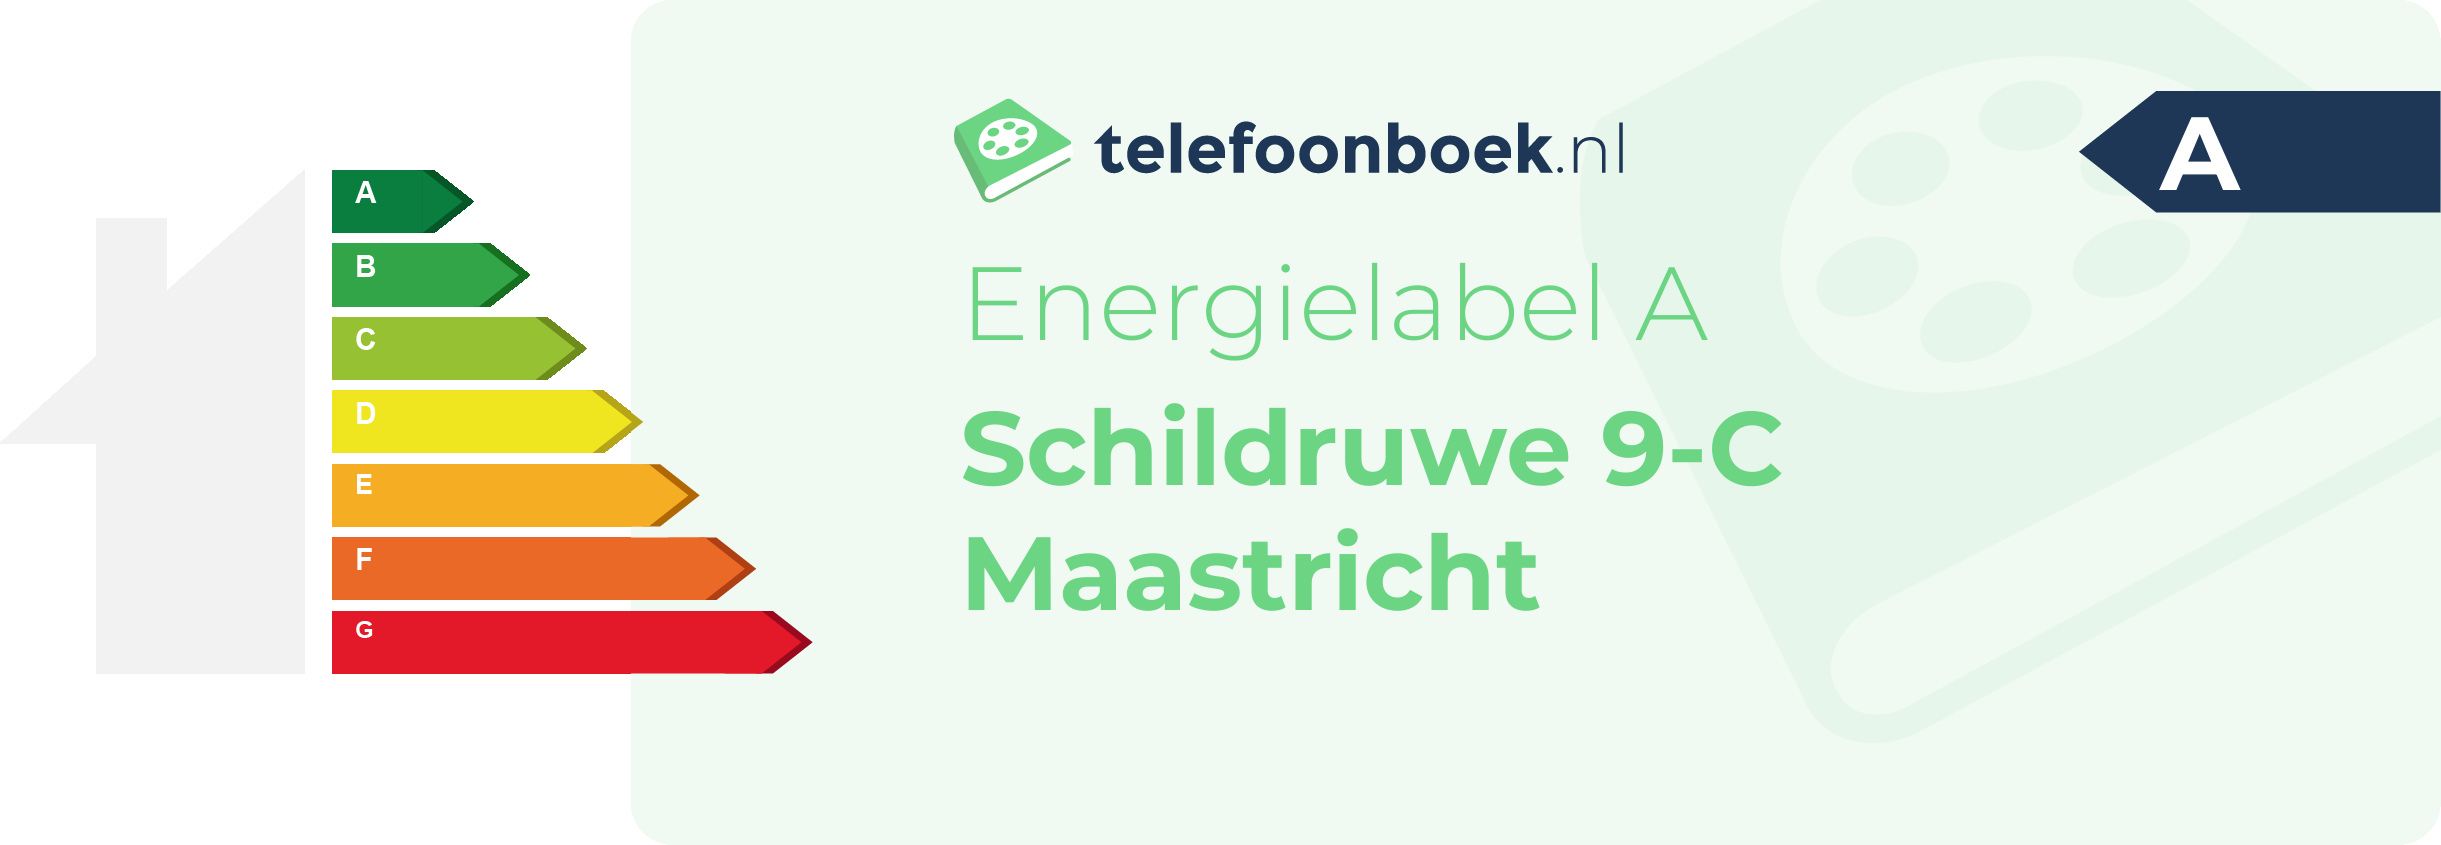 Energielabel Schildruwe 9-C Maastricht